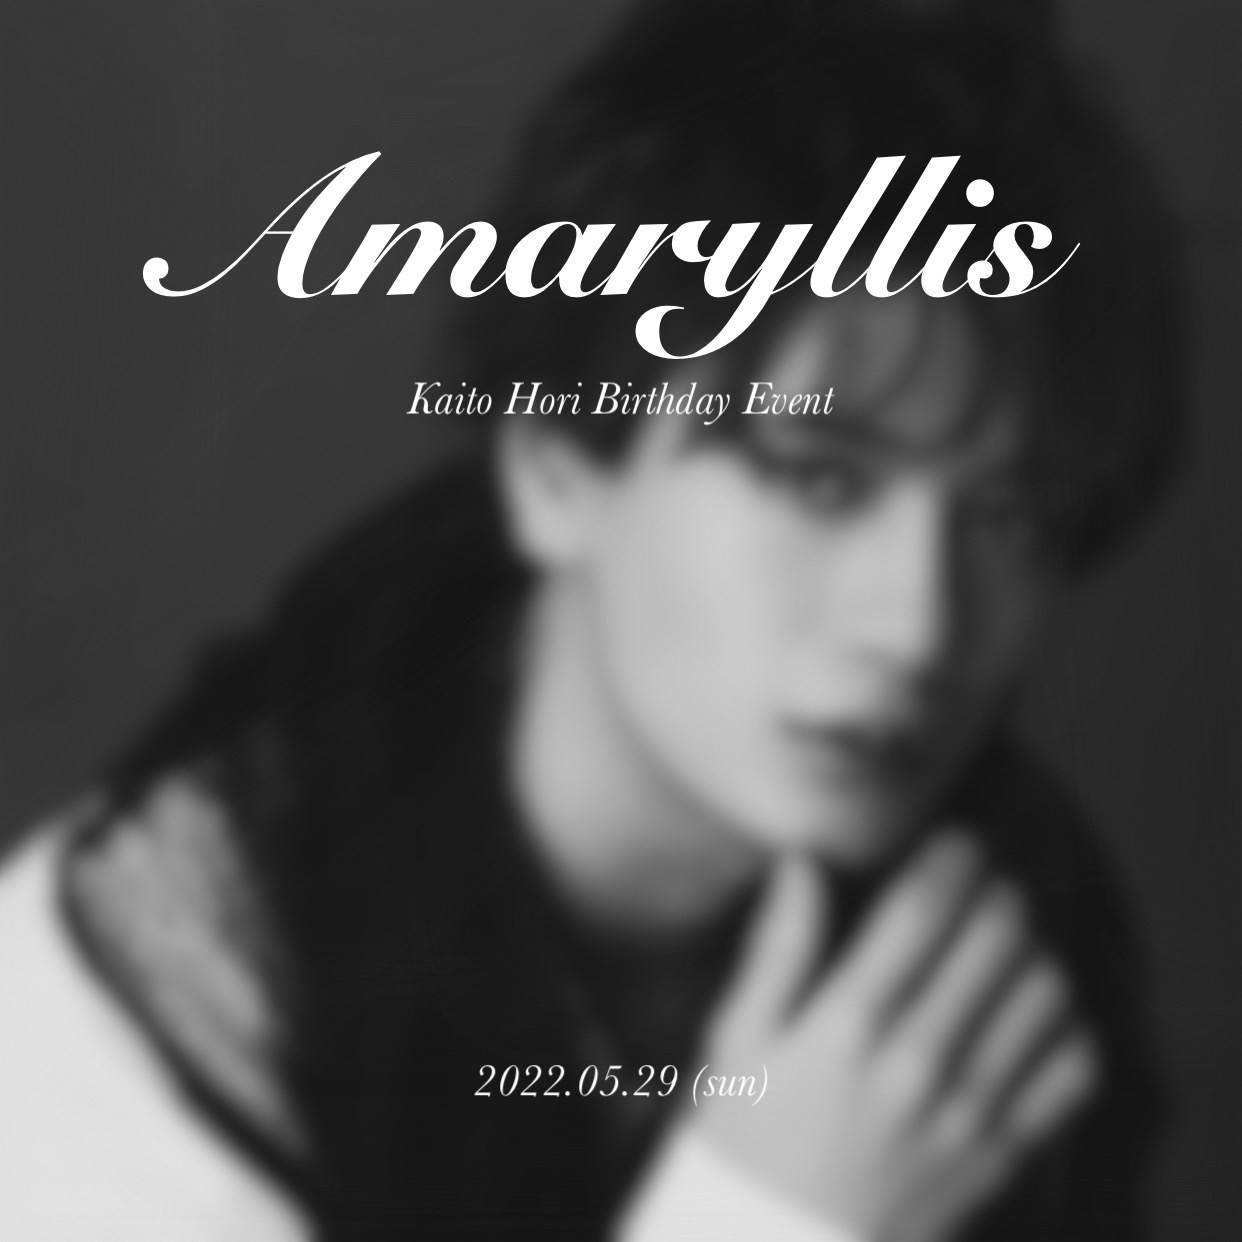 「堀海登 Birthday Event 2022」〜Amaryllis〜